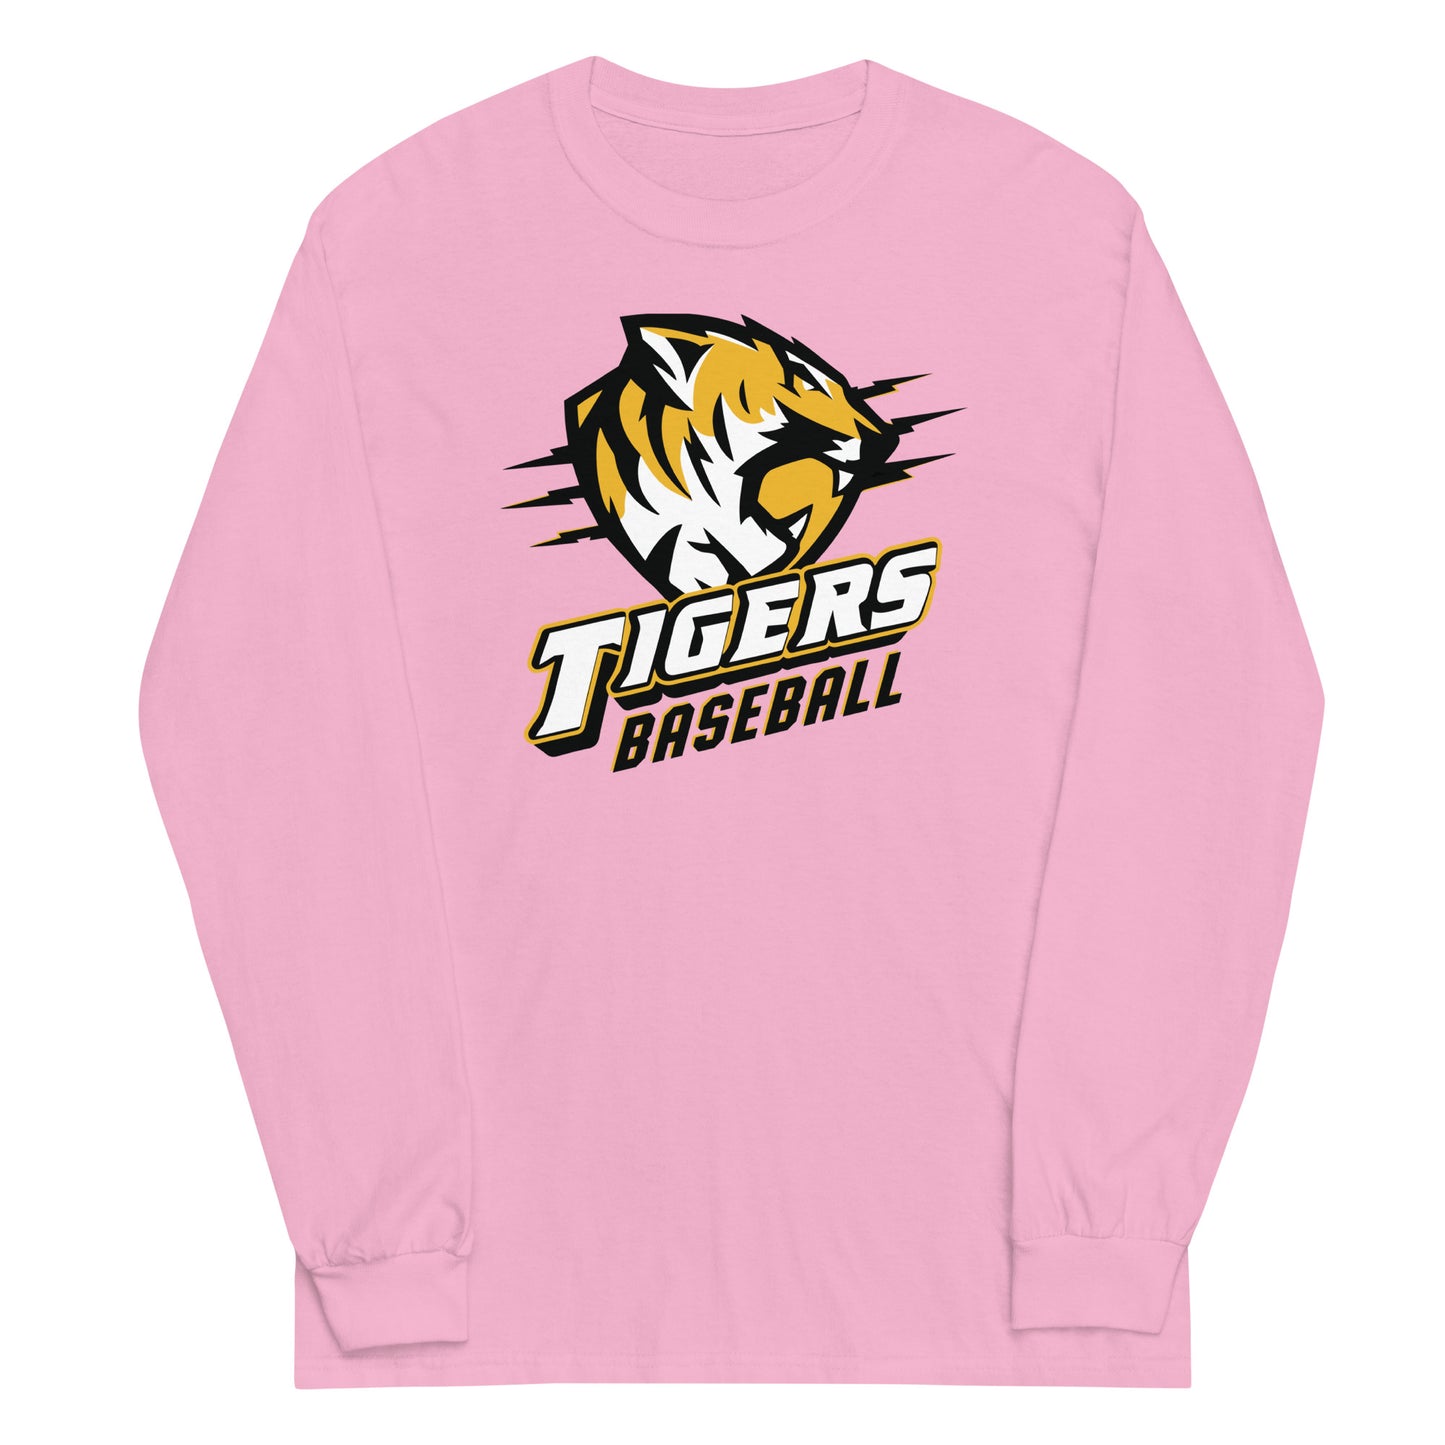 Tigers Baseball Gildan Long Sleeve Tee in Light Pink